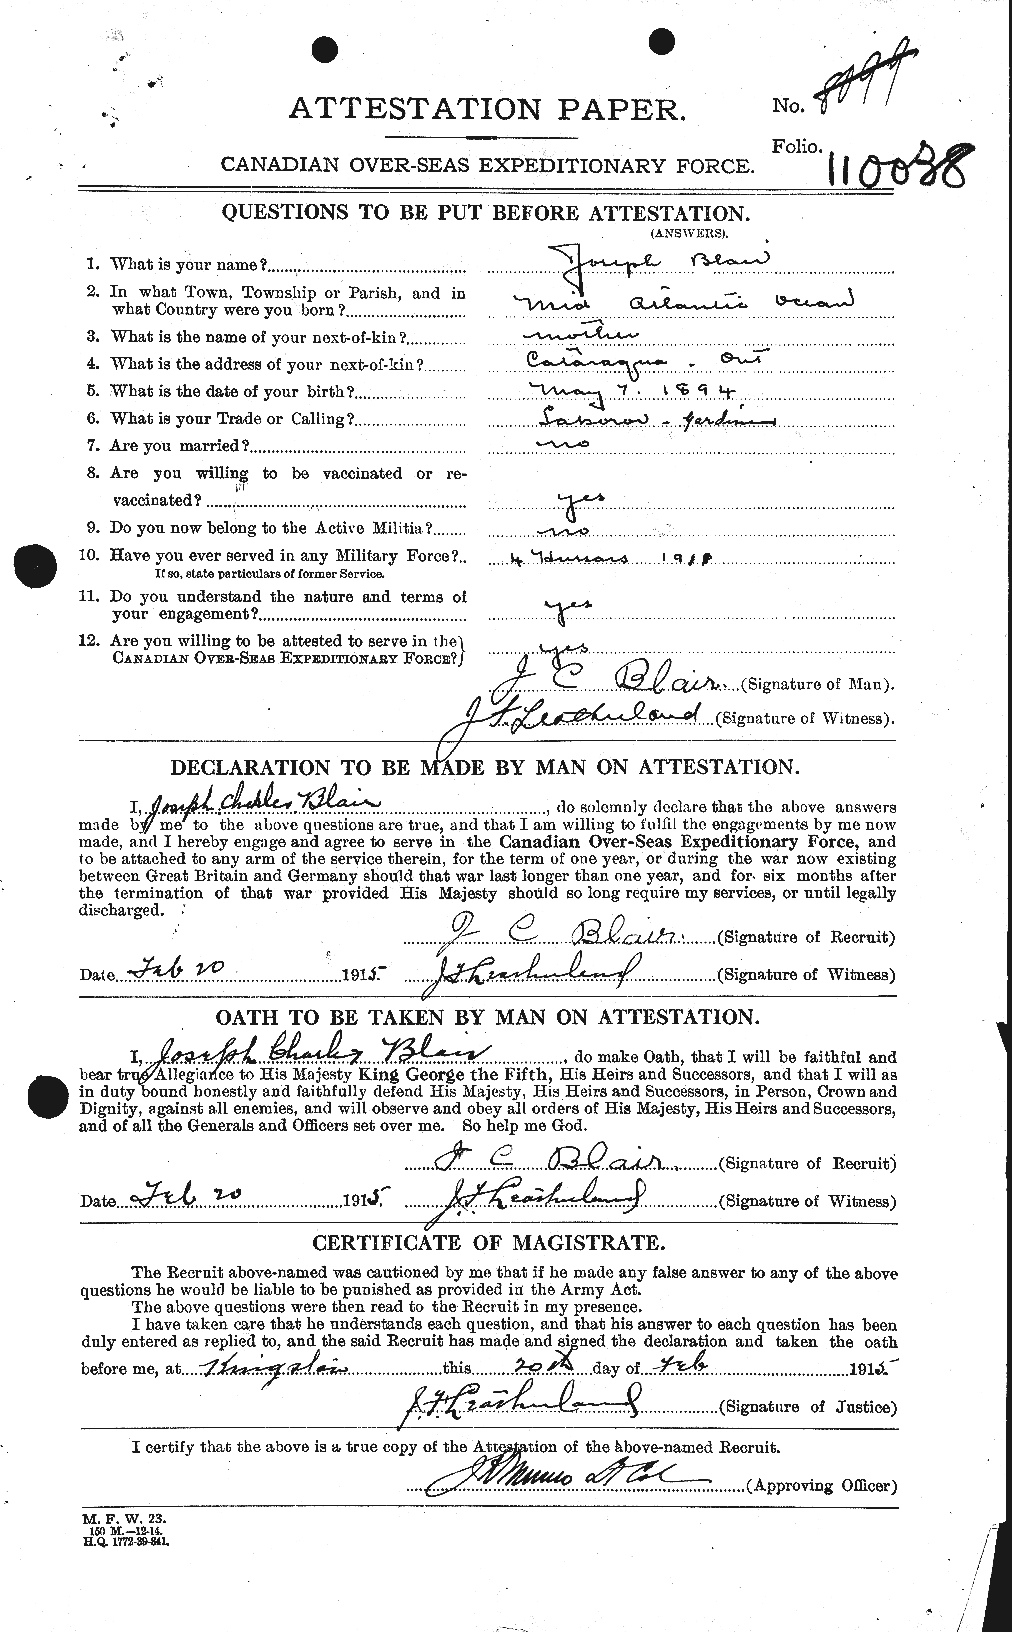 Dossiers du Personnel de la Première Guerre mondiale - CEC 243104a